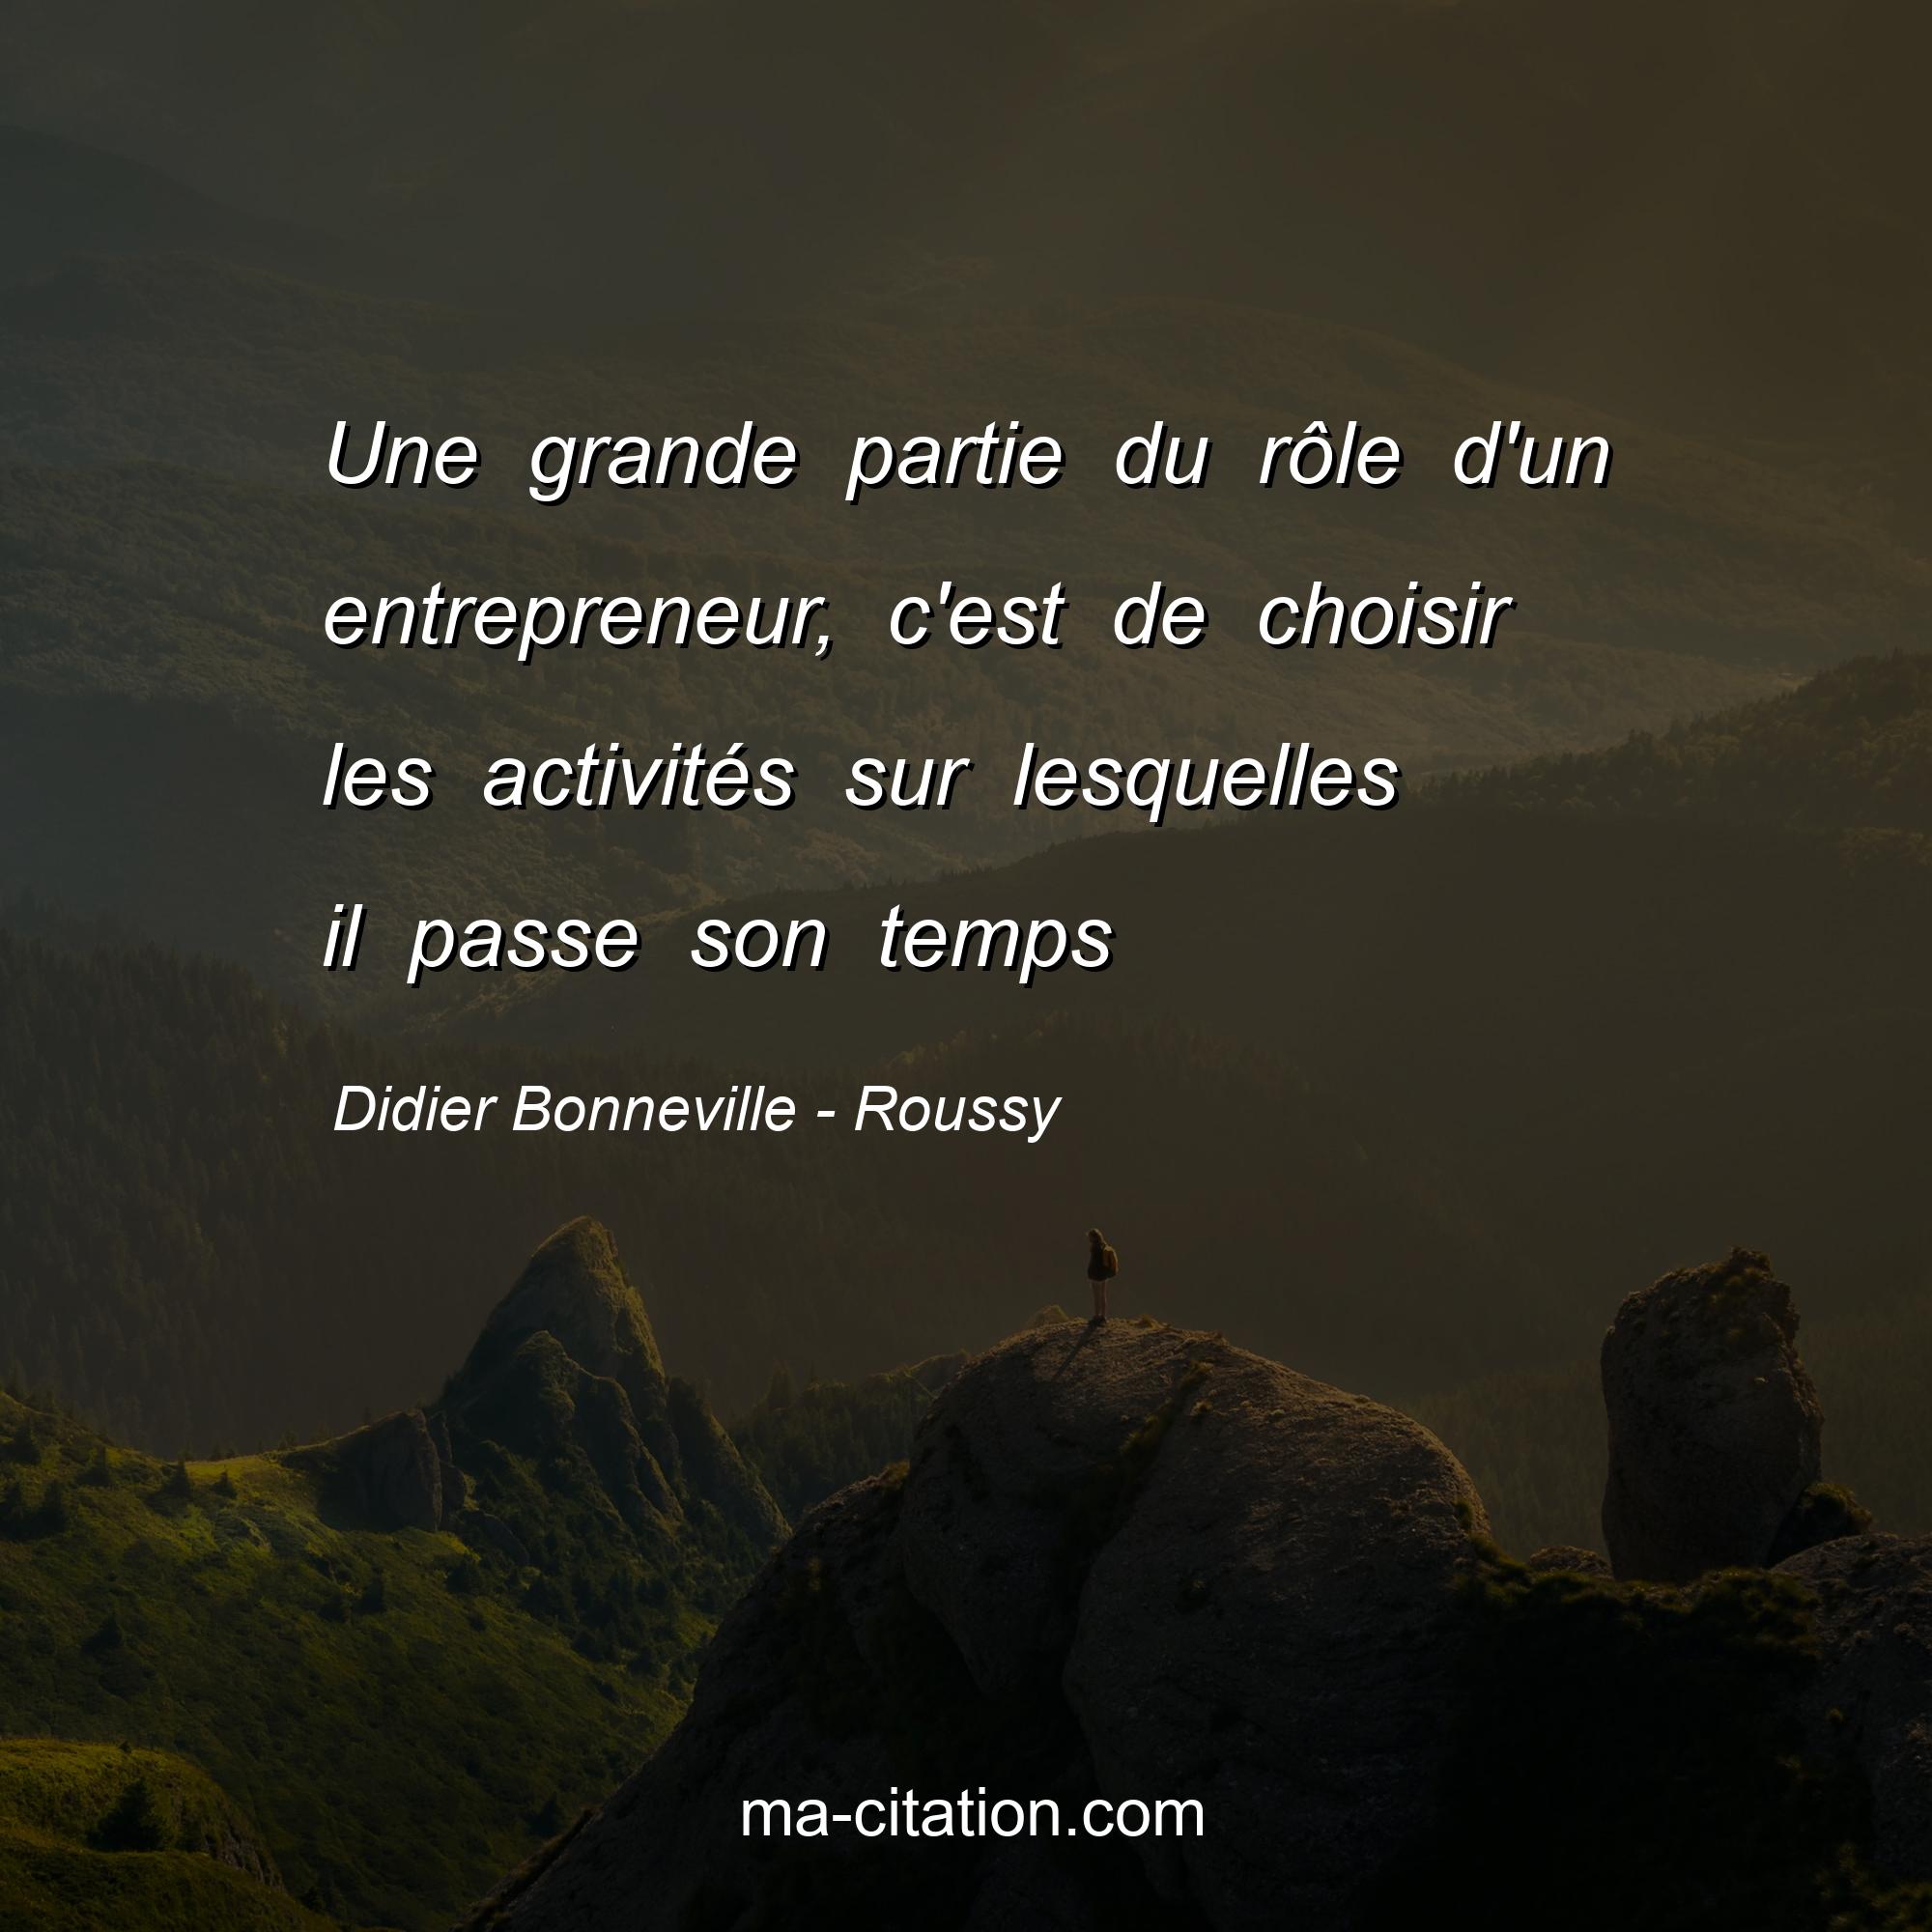 Didier Bonneville - Roussy : Une grande partie du rôle d'un entrepreneur, c'est de choisir les activités sur lesquelles il passe son temps